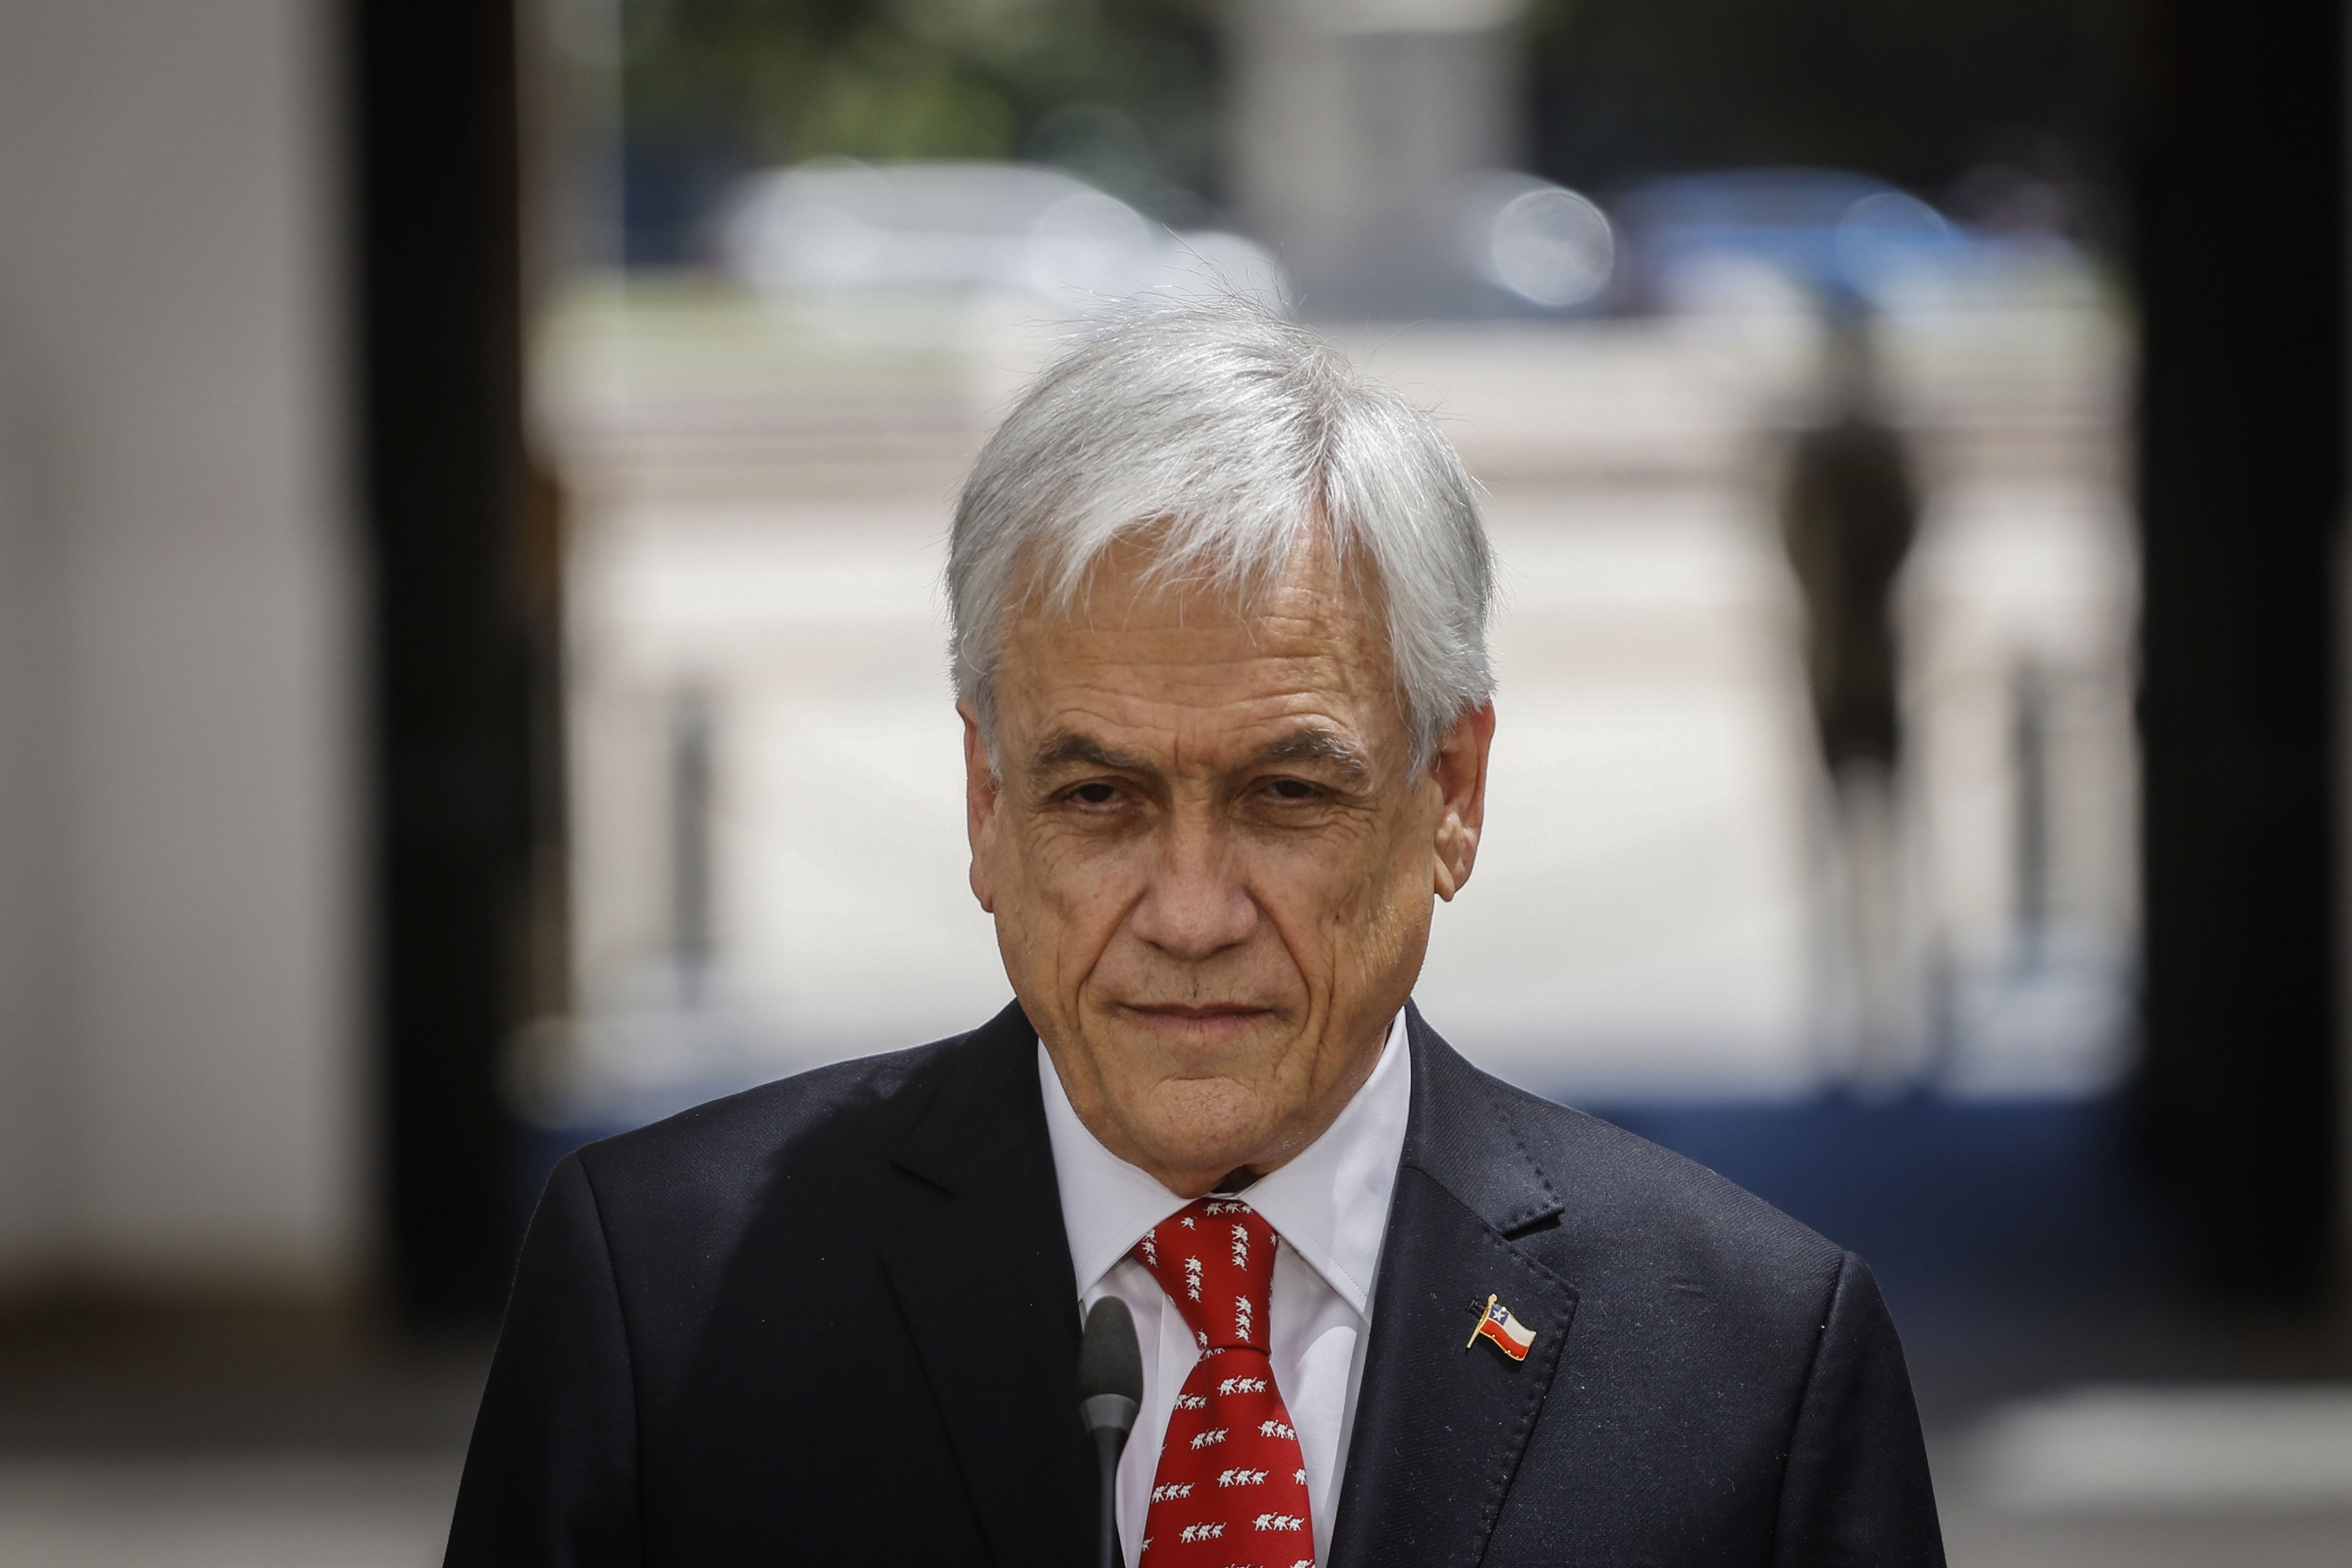 Sebastián Piñera es el principal indicado como responsable de la decisión que afectaría la viabilidad del proyecto de retiro de fondos que avanza en el Congreso Nacional de Chile
